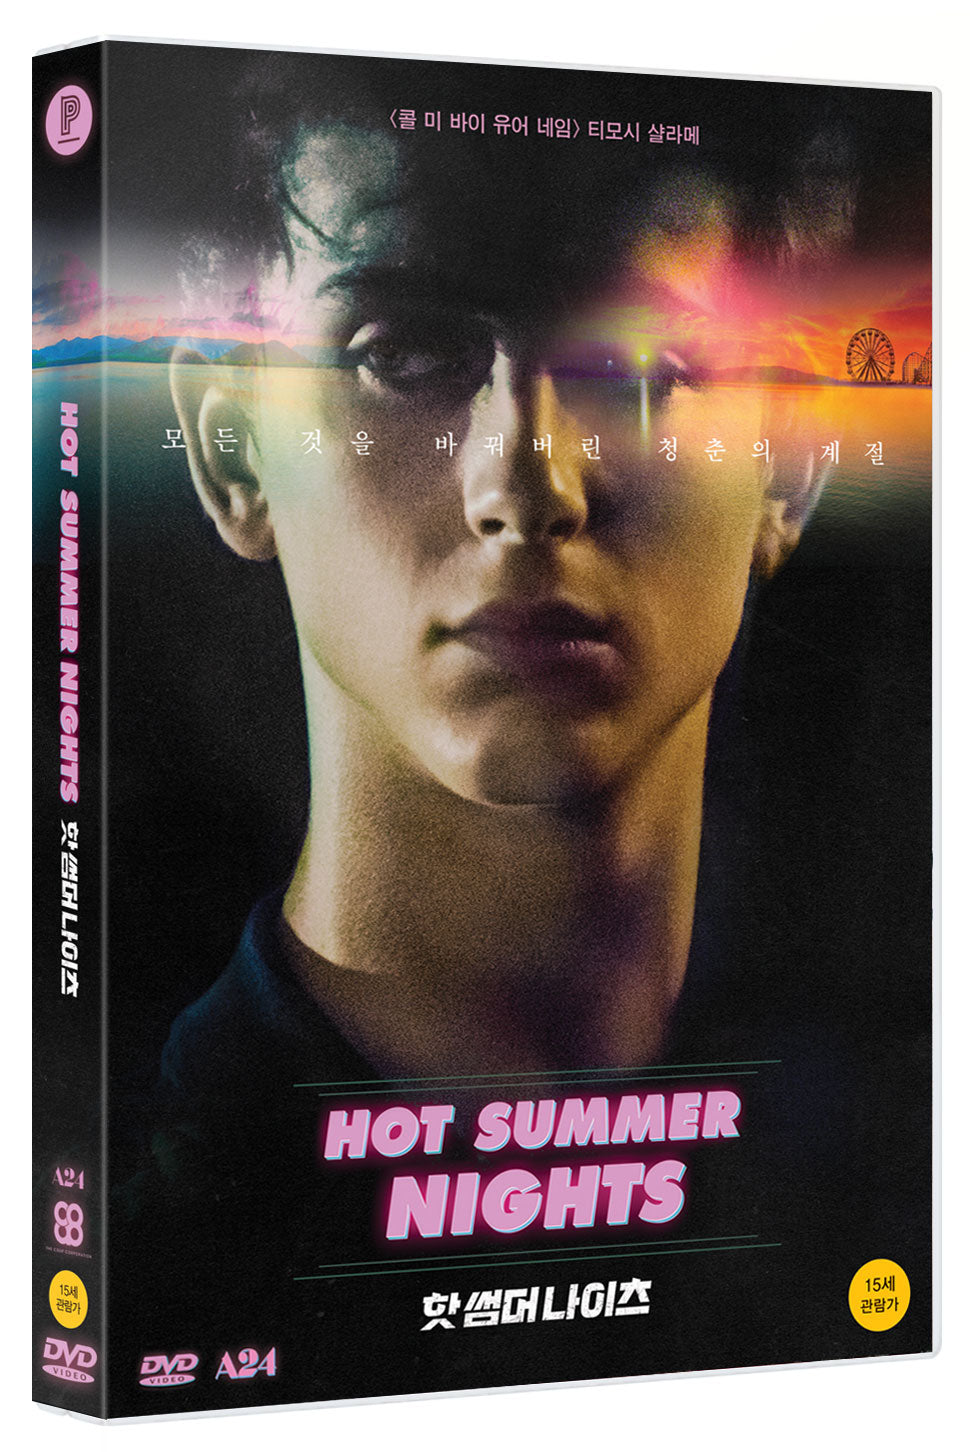 HOT SUMMER NIGHTS DVD